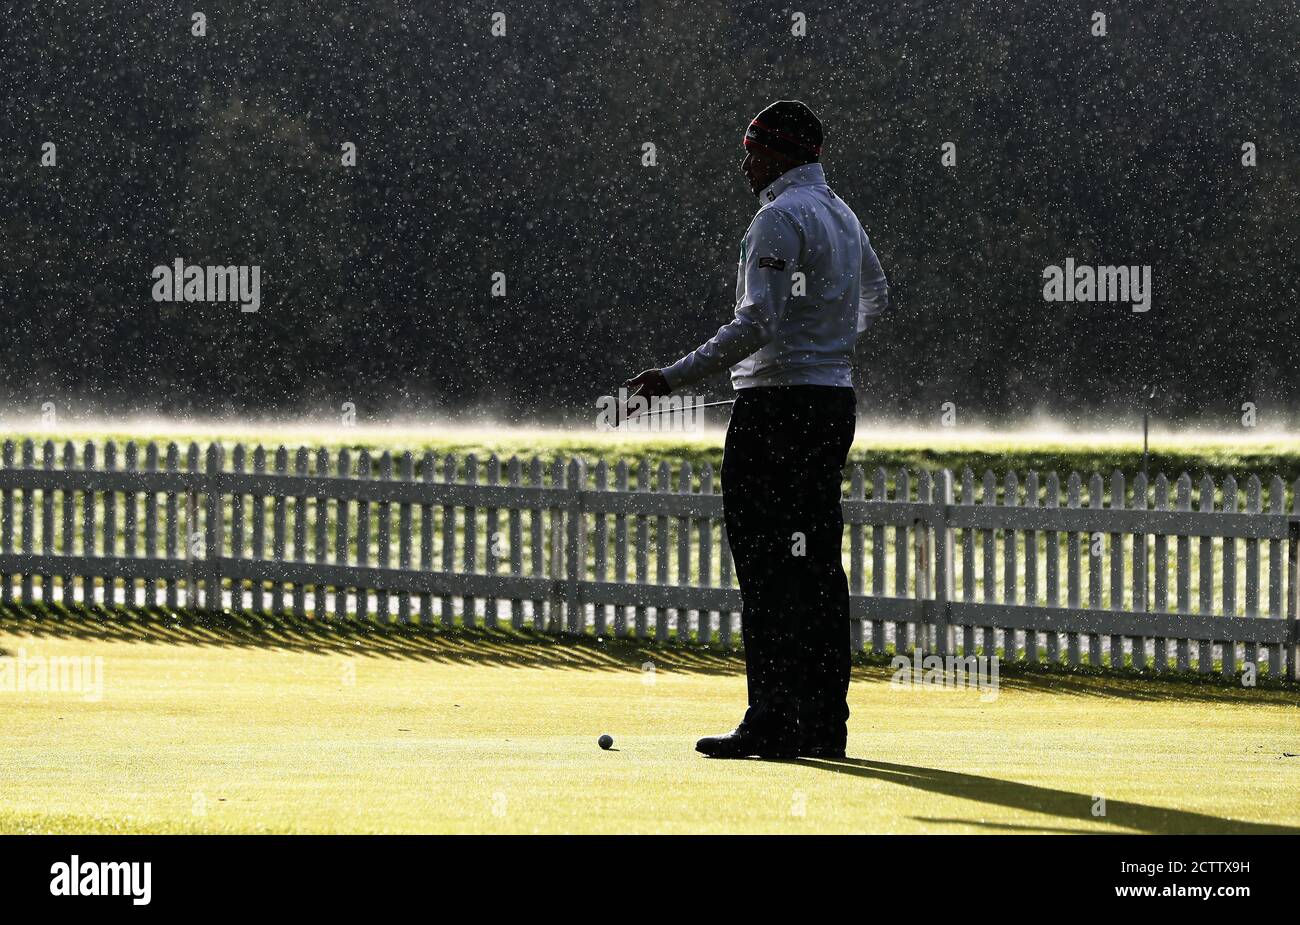 Ein Golfer auf dem Putting Green, da das Spiel aufgrund der Wetterbedingungen am zweiten Tag der Irish Open im Galgorm Castle Golf Club, Ballymena, verzögert wurde. Stockfoto